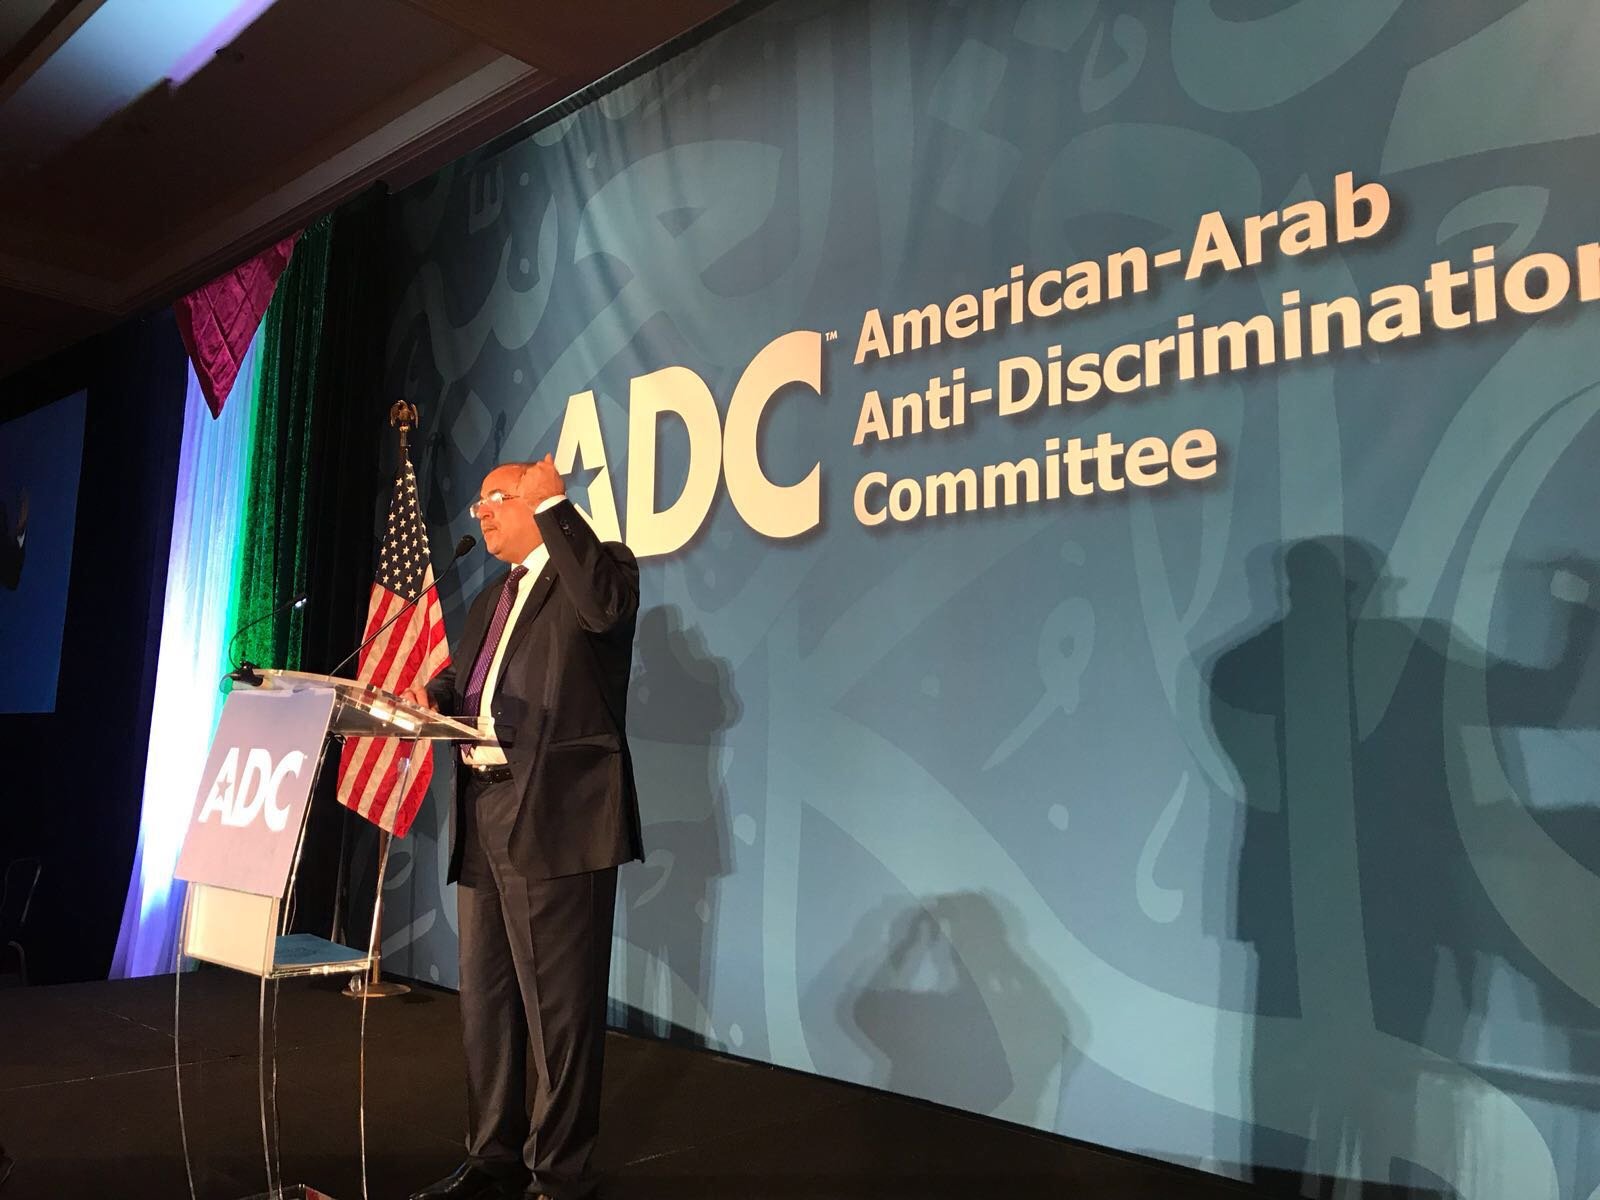 الطيبي يُلقي خطابا في واشنطن خلال مؤتمر اللجنة الأمريكية العربية لمكافحة التمييز-1